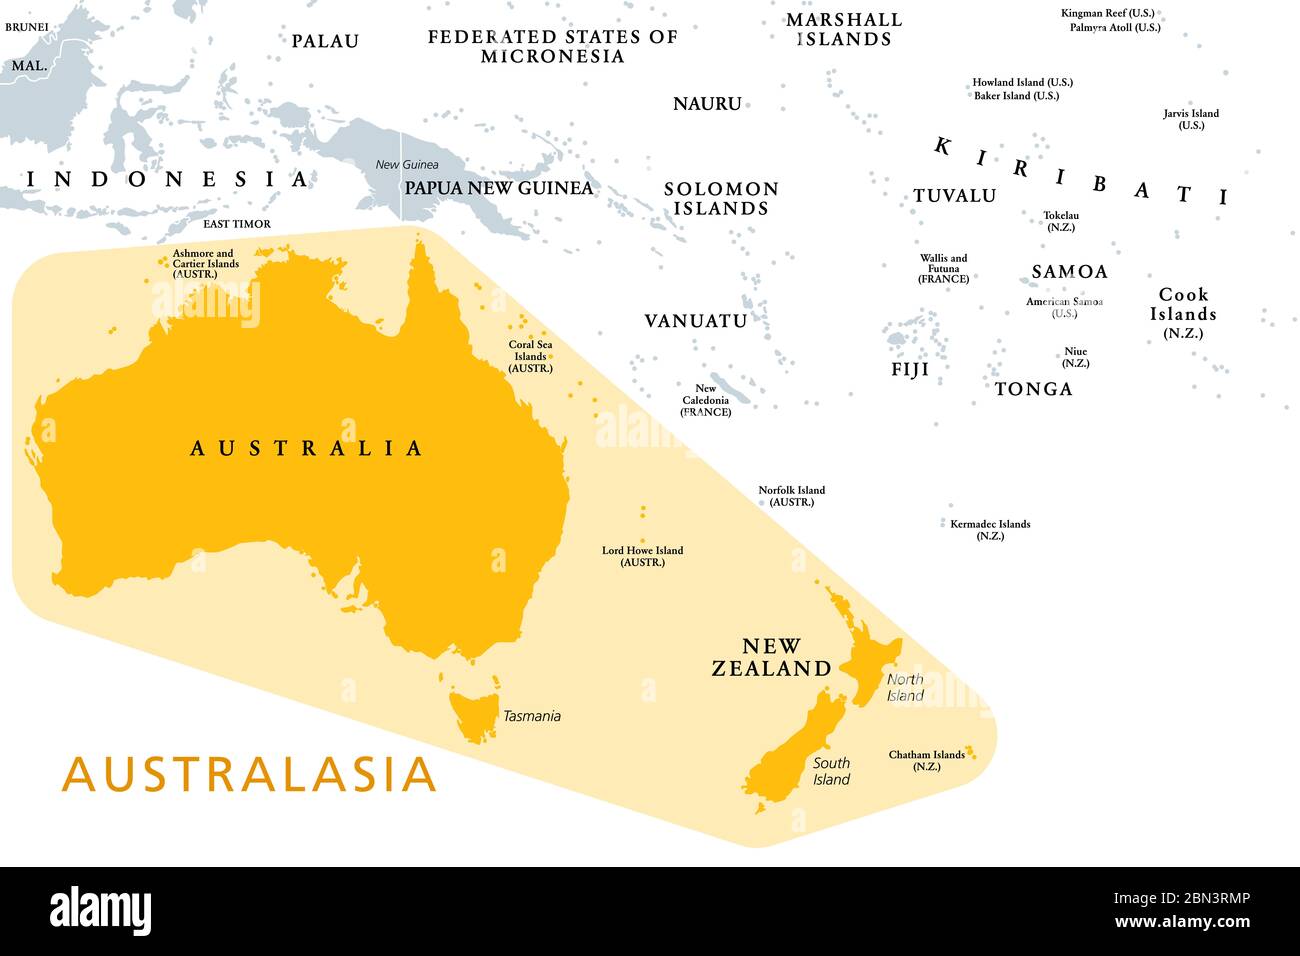 Australasien, Australien und Neuseeland, eine Unterregion Ozeaniens, politische Karte. Im UN-Geosschema der Kontinent Australien mit Neuseeland. Stockfoto